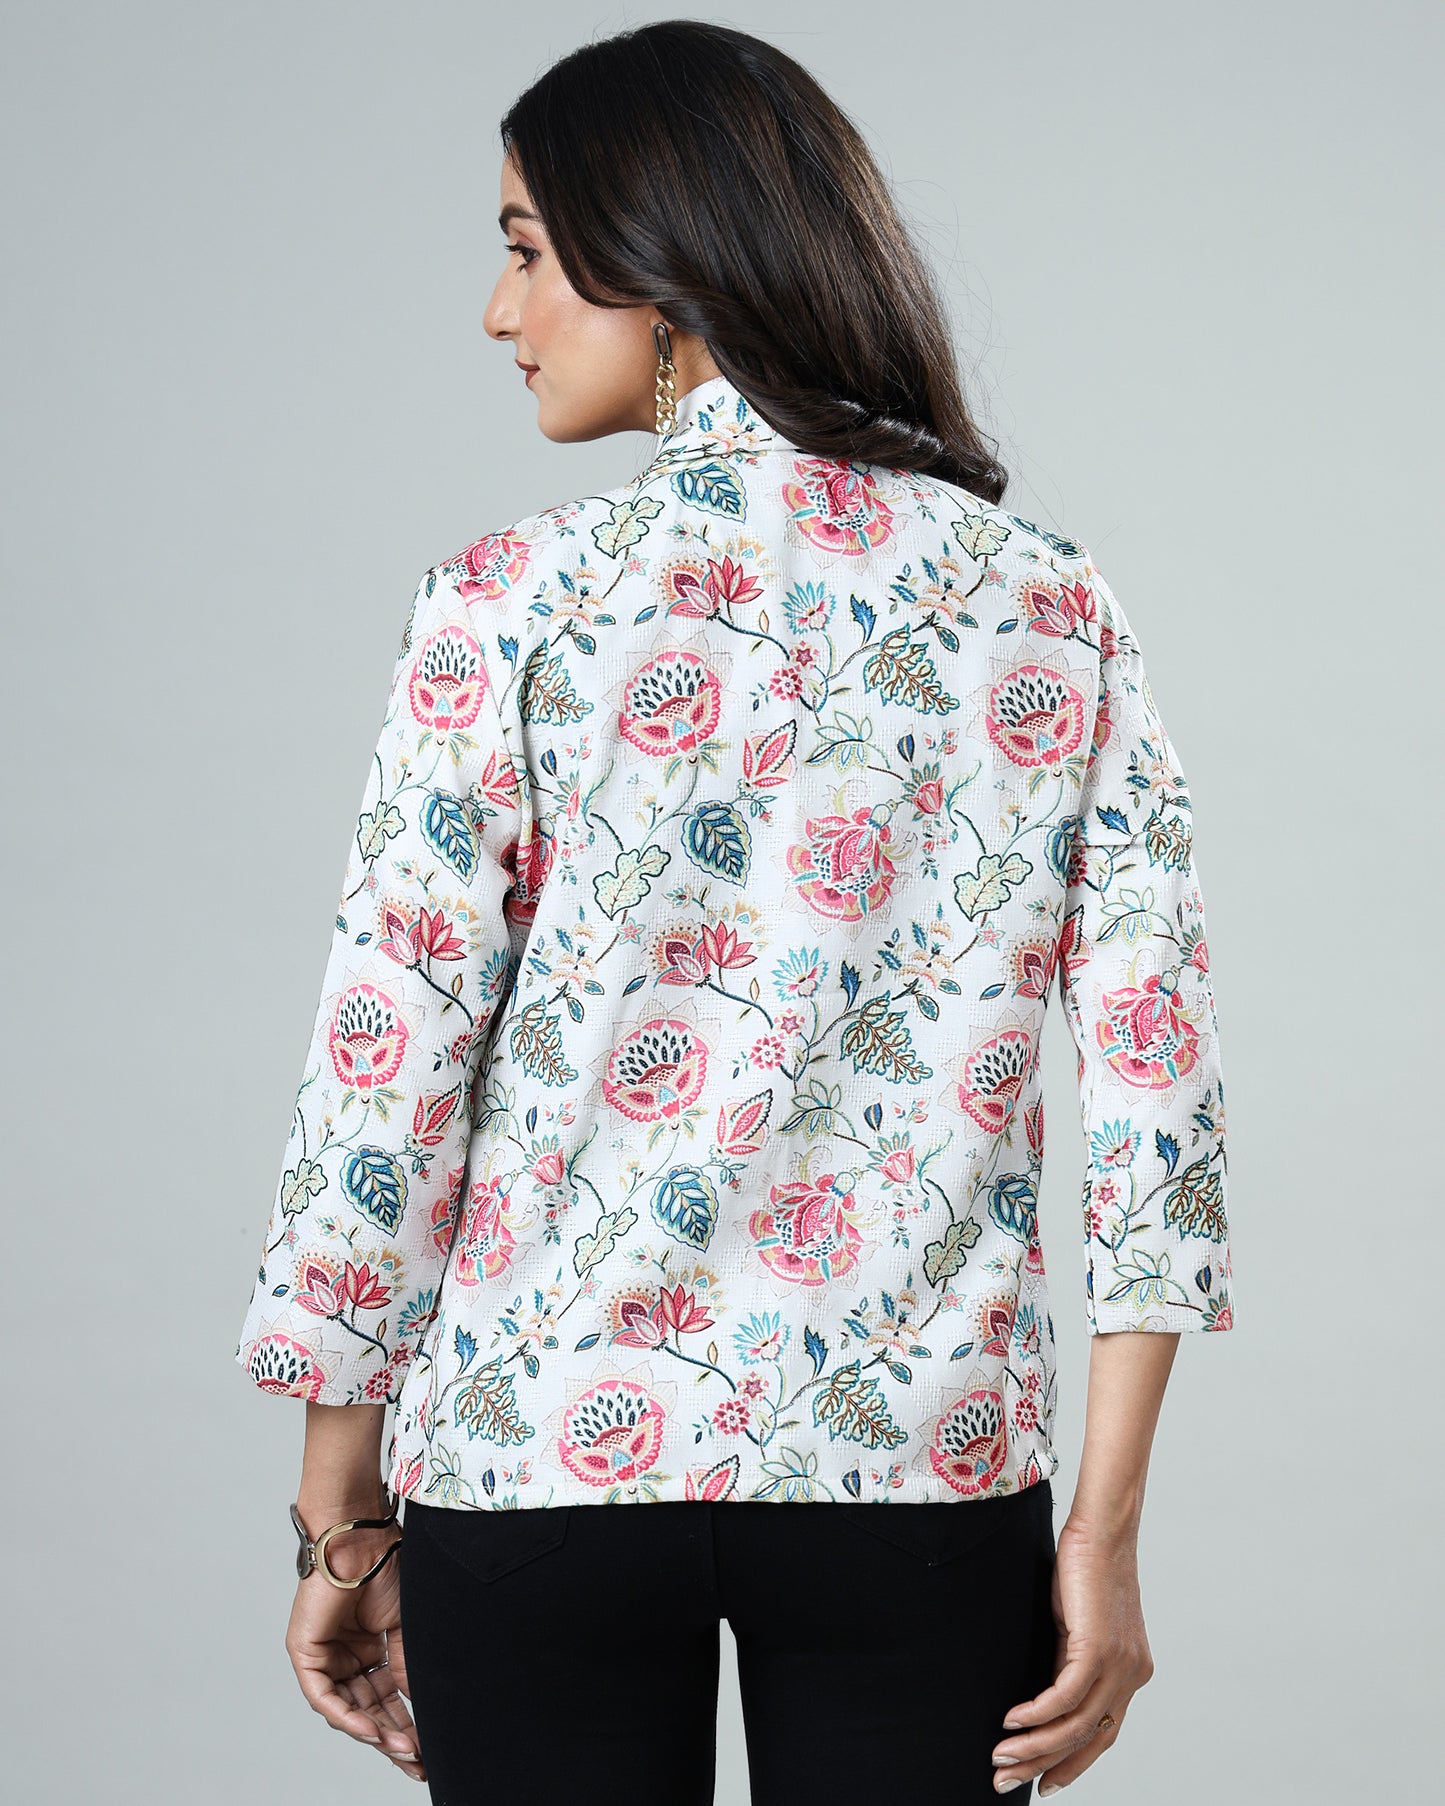 Stylish Floral Fantasy Women's Jacquard Weave Jacket